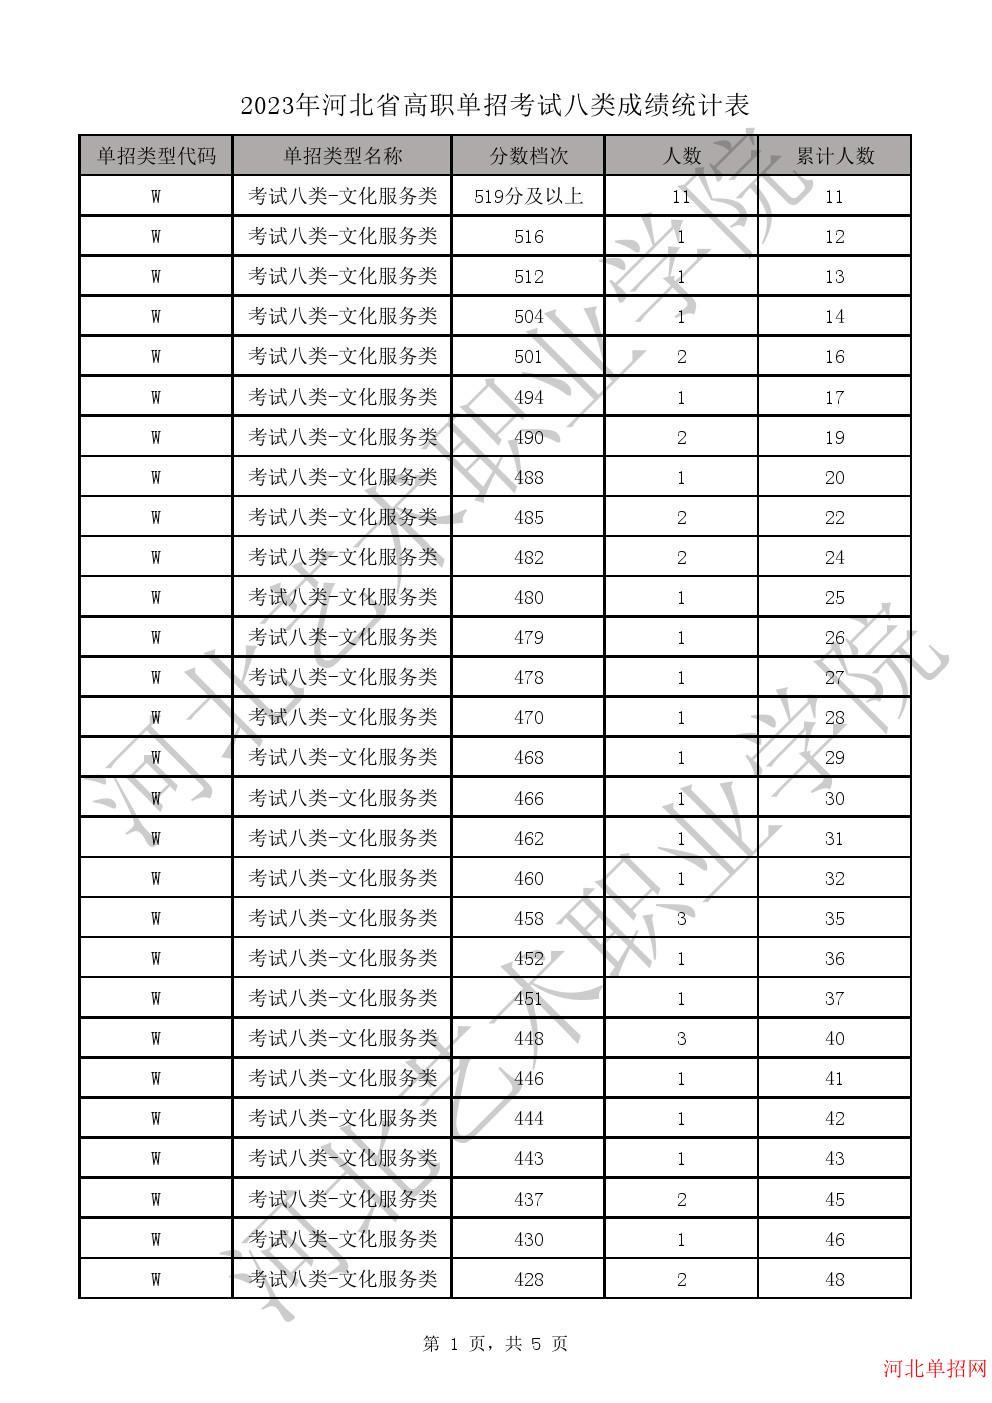 2023年河北省高职单招考试八类成绩统计